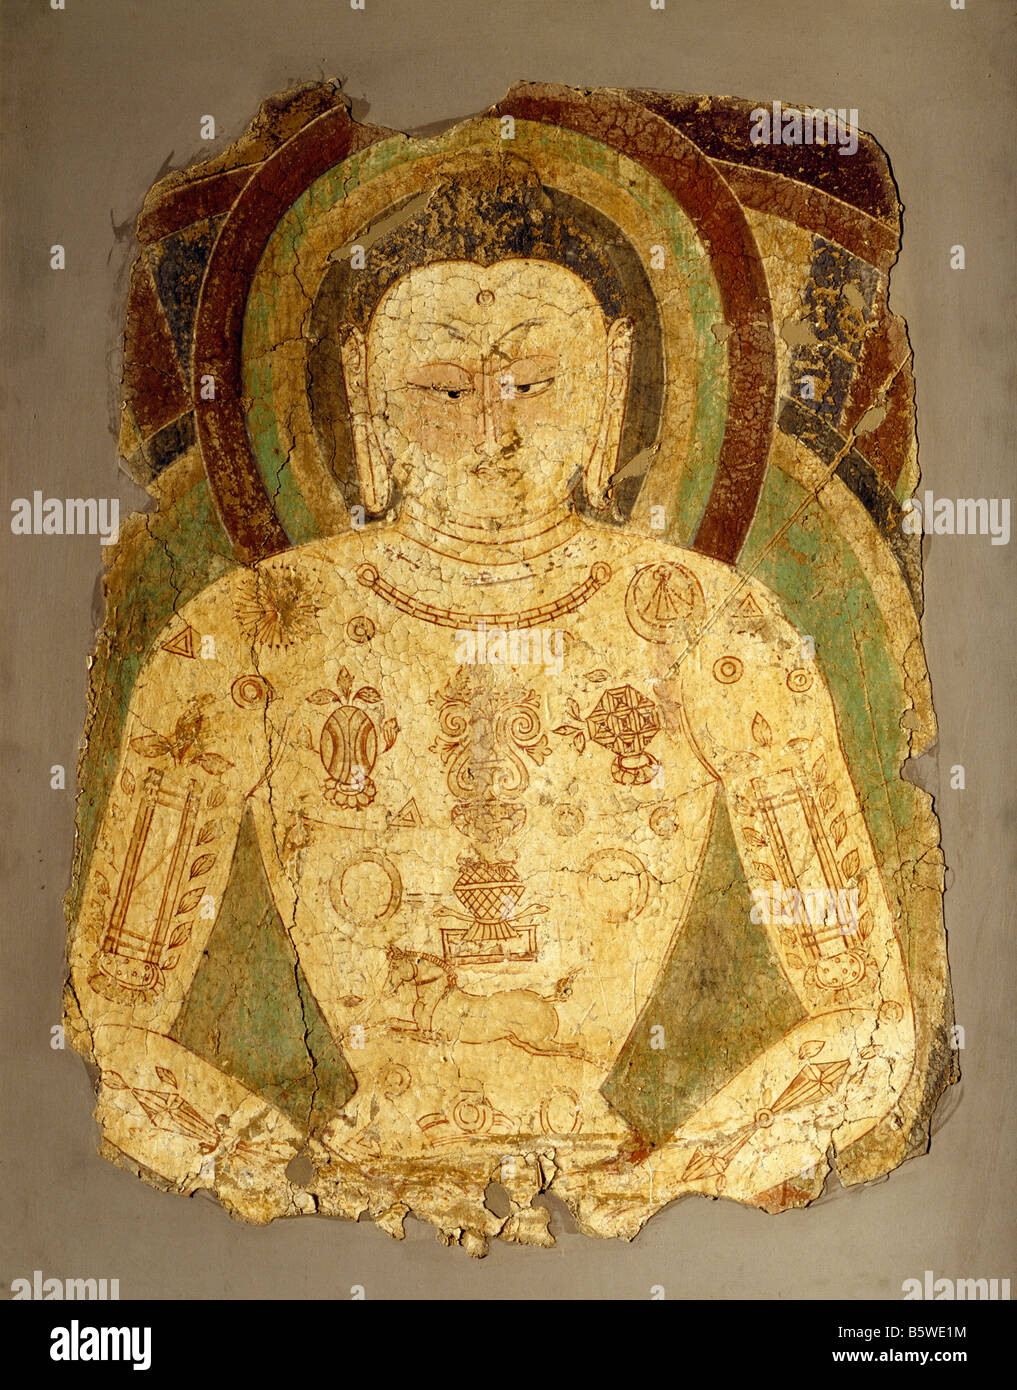 Vairochana Buddha Wandbild aus Zentral Asien Balawaste 7. / 8. Jahrhundert. Nationales Museum von Neu-Delhi Indien Har. 75,8 x 56 D Stockfoto